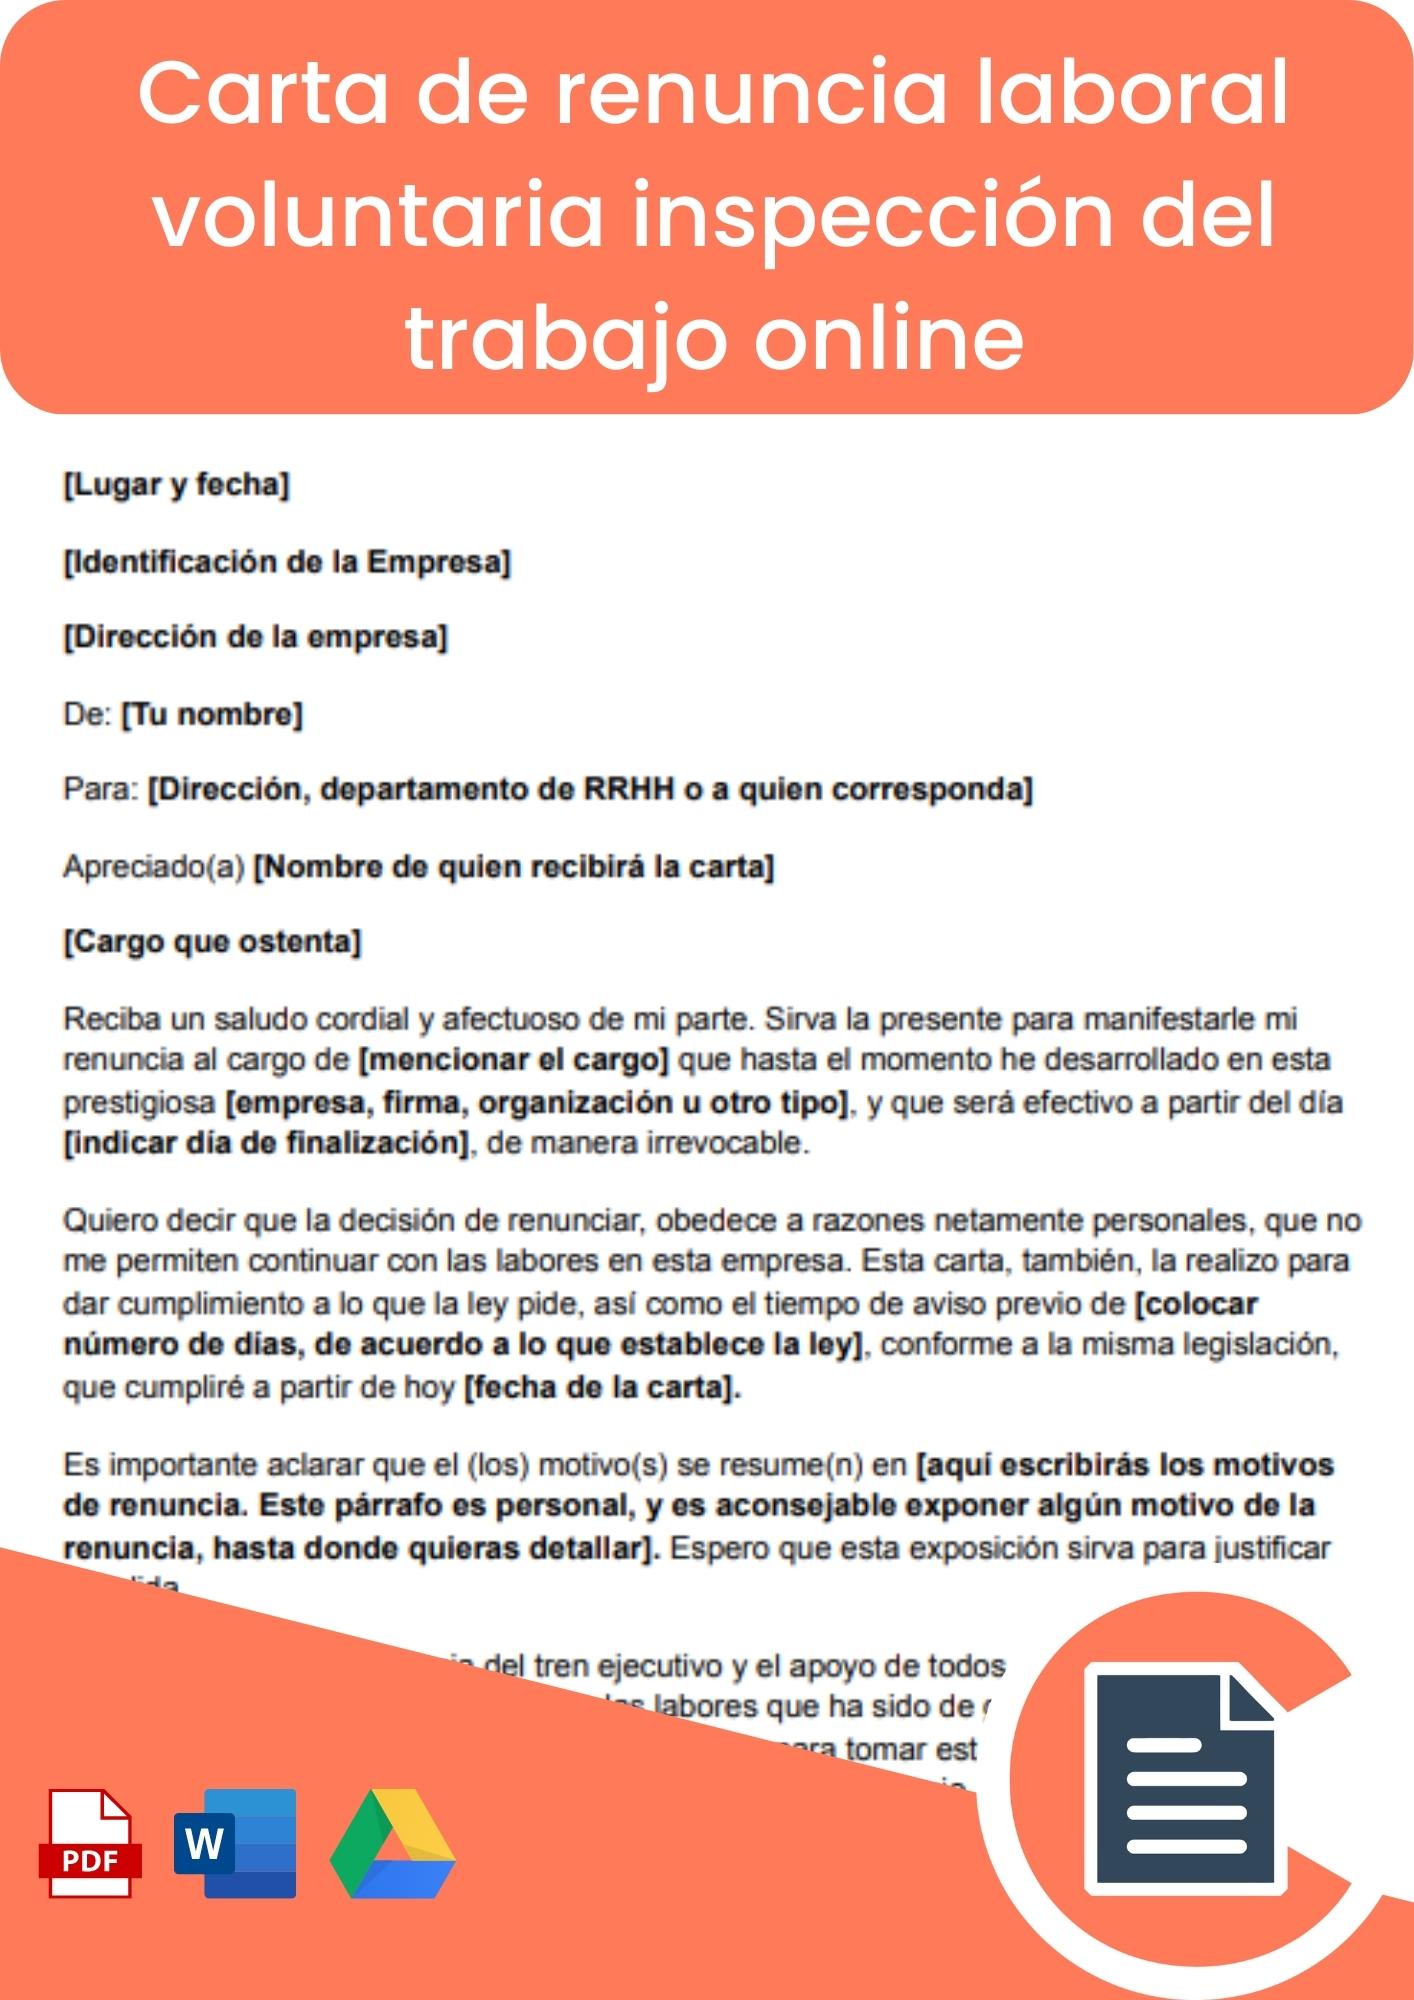 Carta de renuncia laboral voluntaria inspección del trabajo online